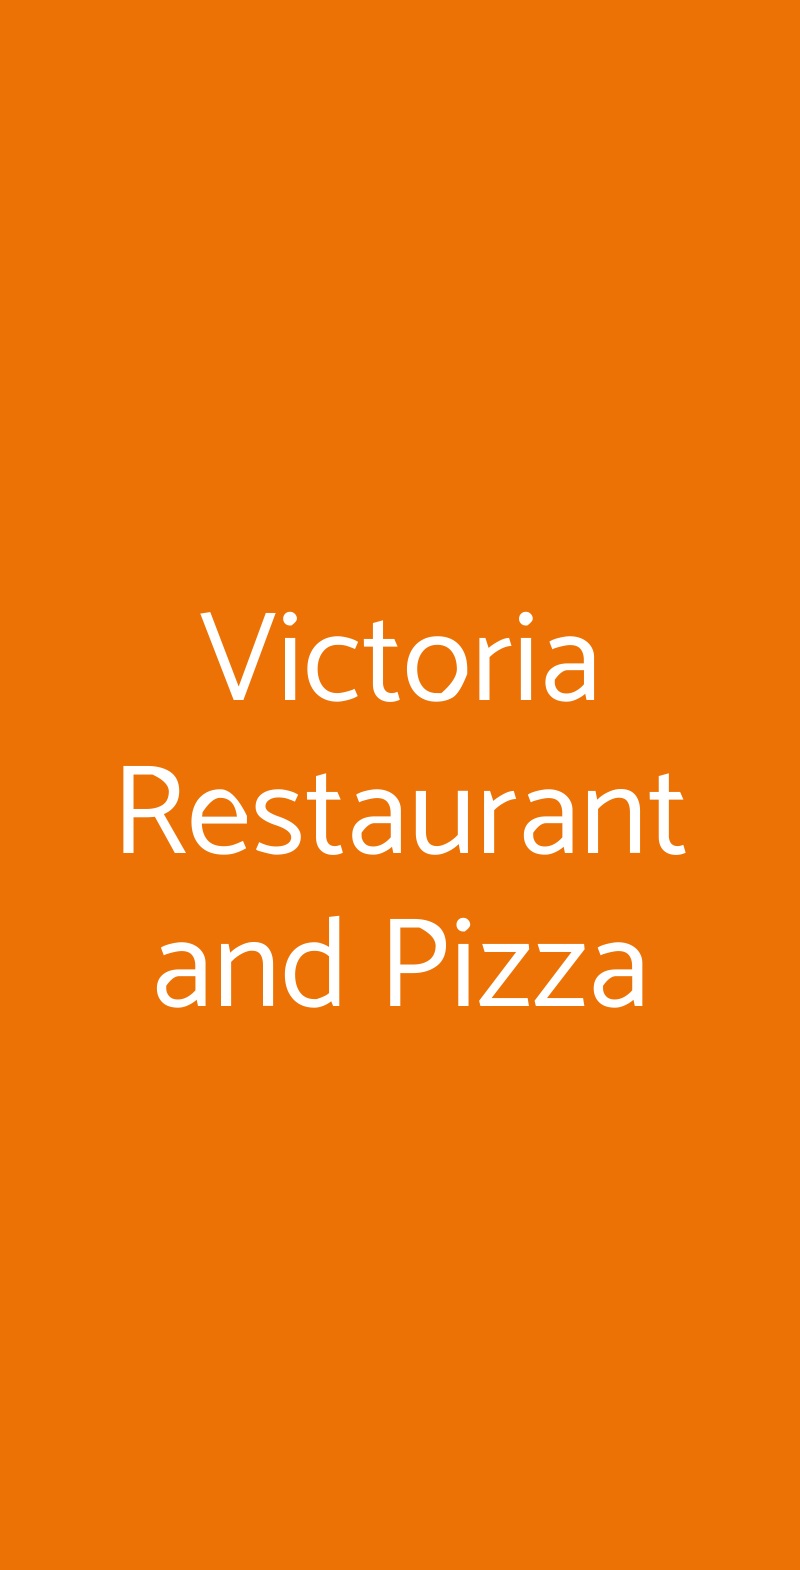 Victoria Restaurant and Pizza Napoli menù 1 pagina